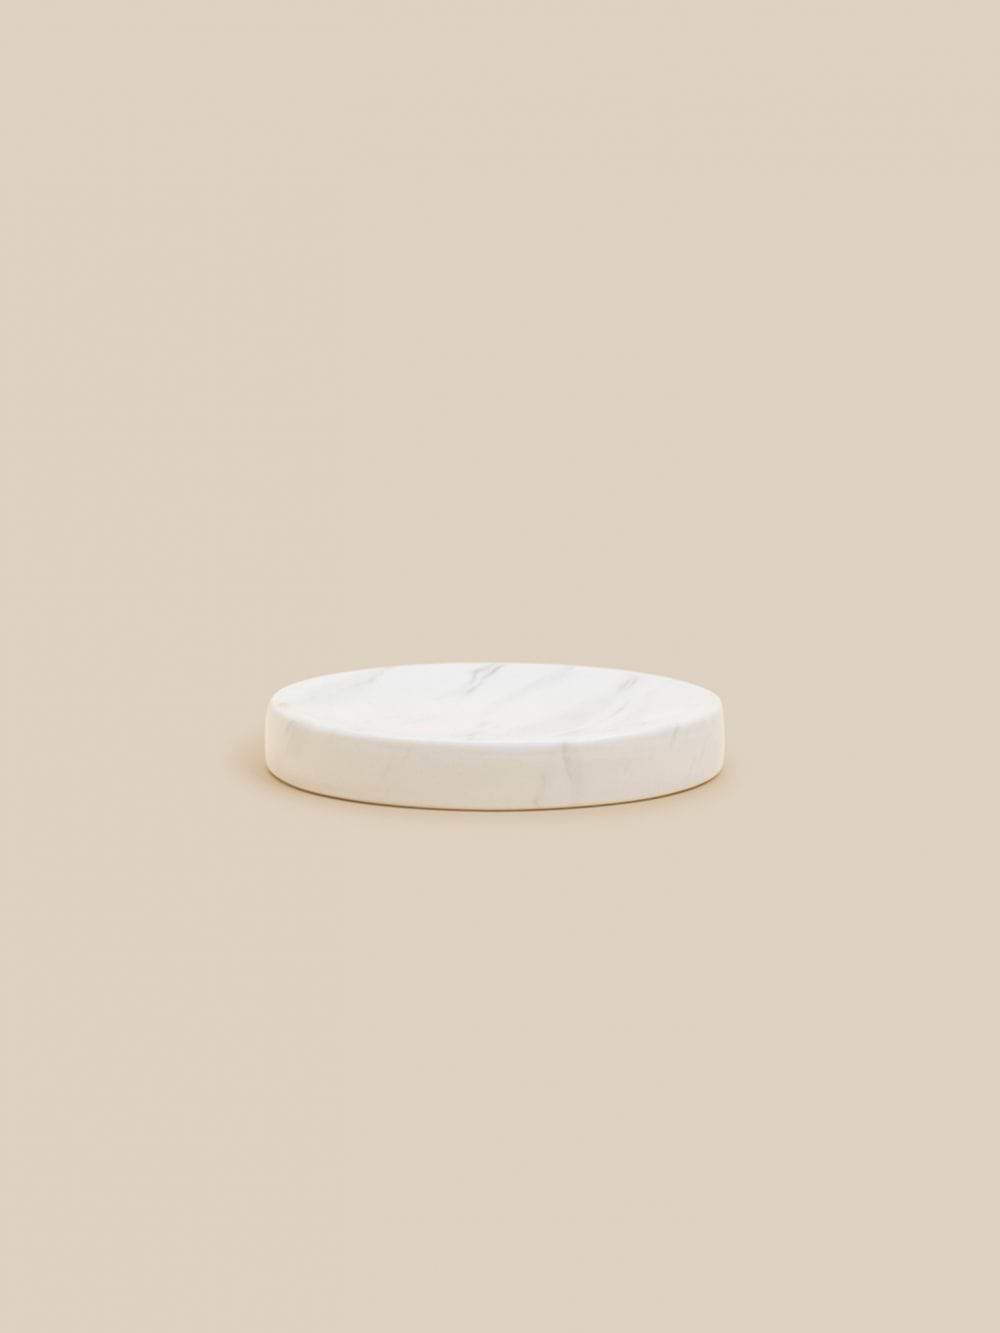 כלי לסבון קרמיקה לבנה 13.3X9.8X2.1 ס”מ